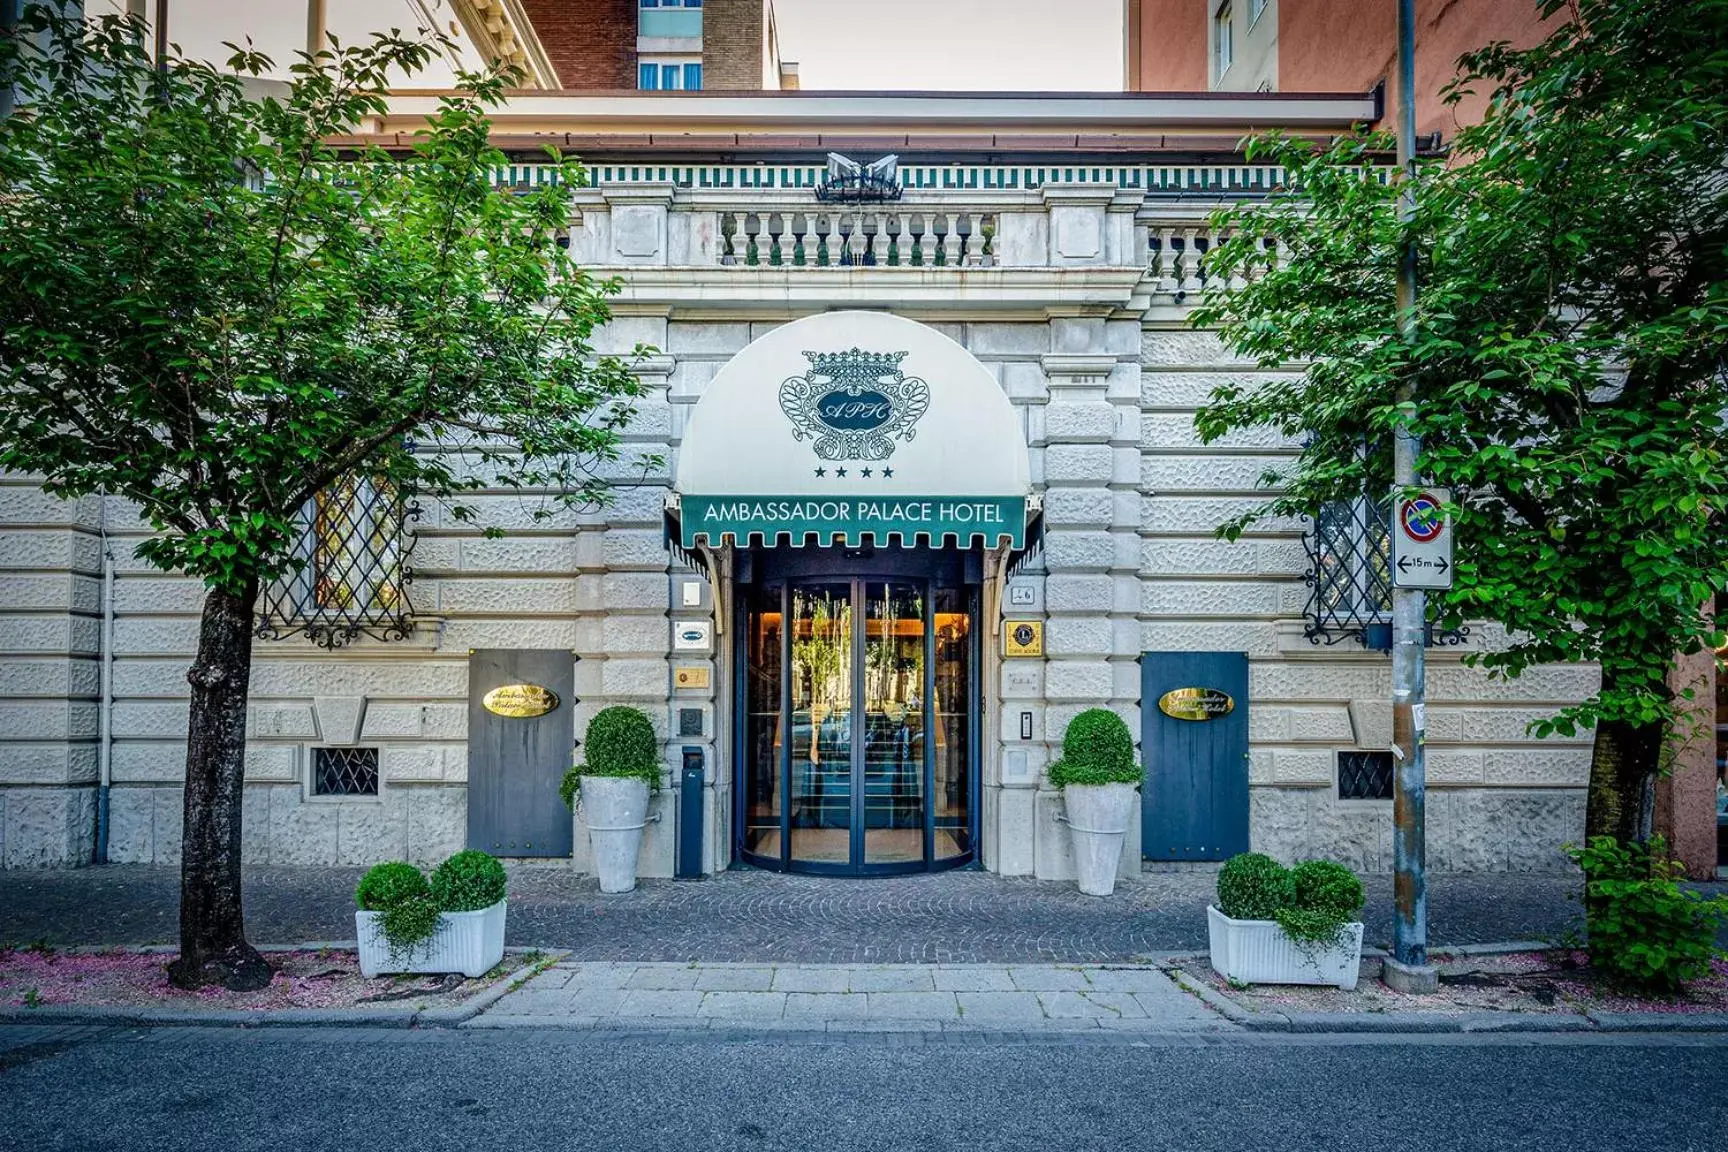 Facade/entrance in Ambassador Palace Hotel